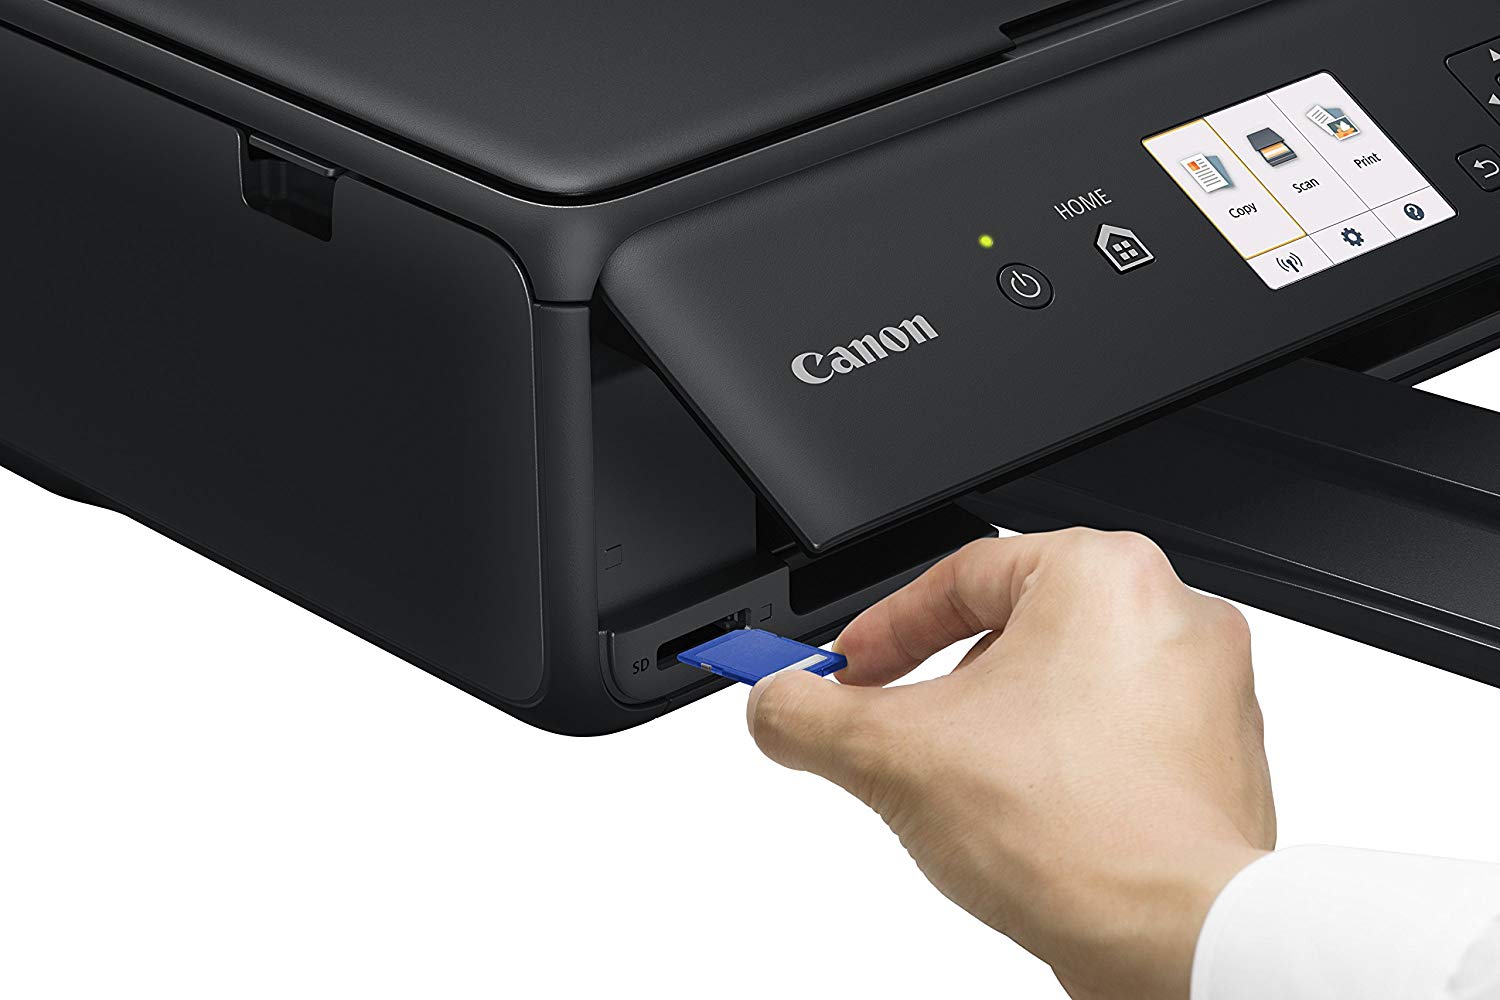 Canon Pixma Ts5050 All In One Inkjet Printer Help Tech Co Ltd